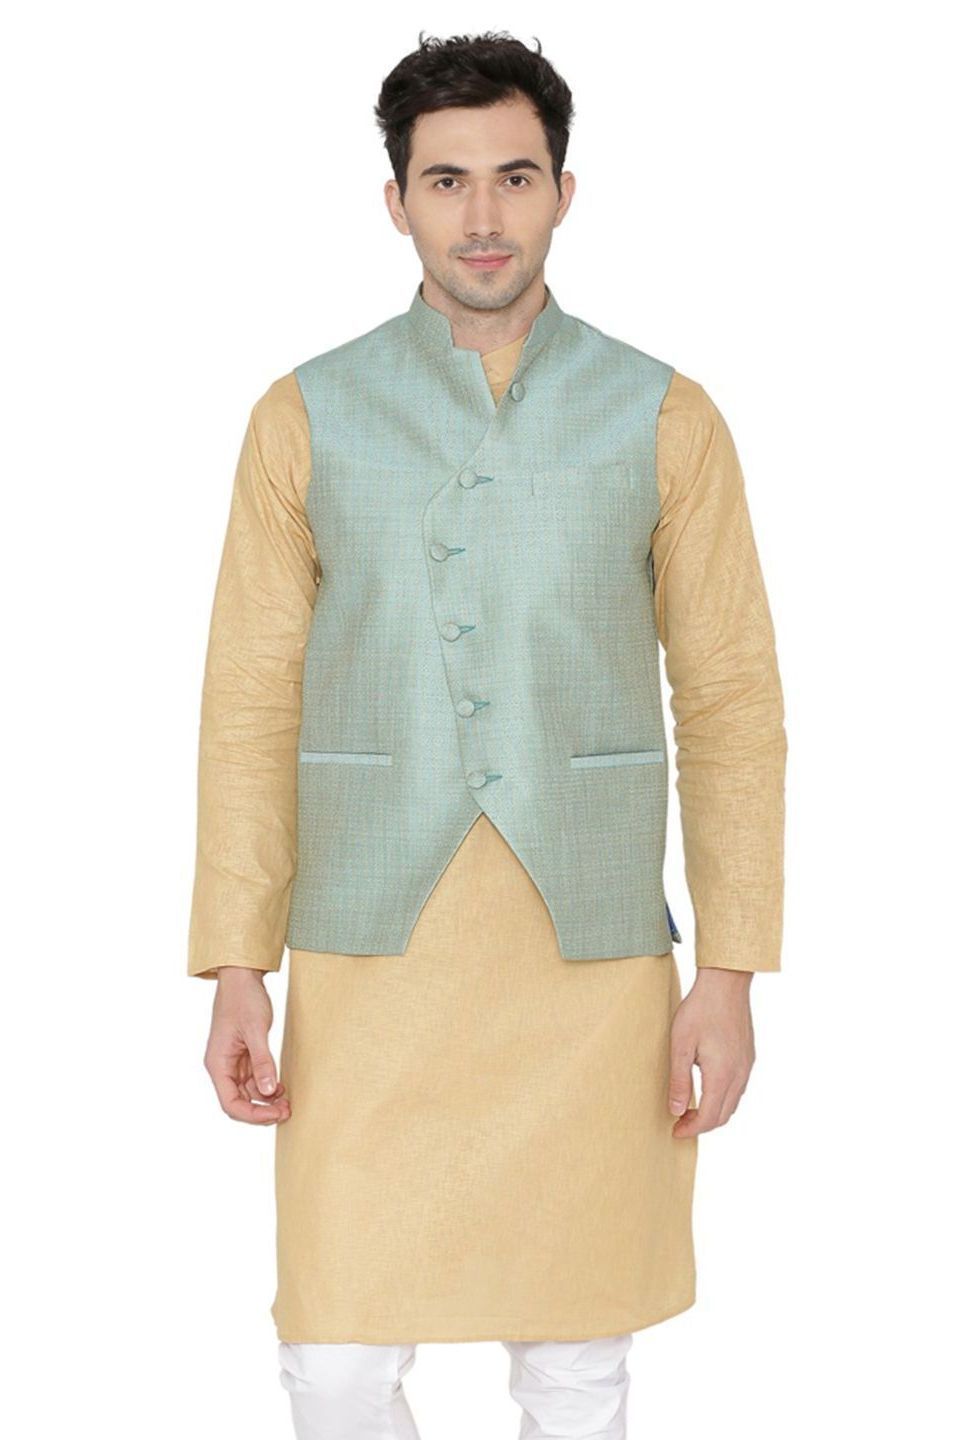 Banarasi Rayon Cotton Blue Nehru Jacket